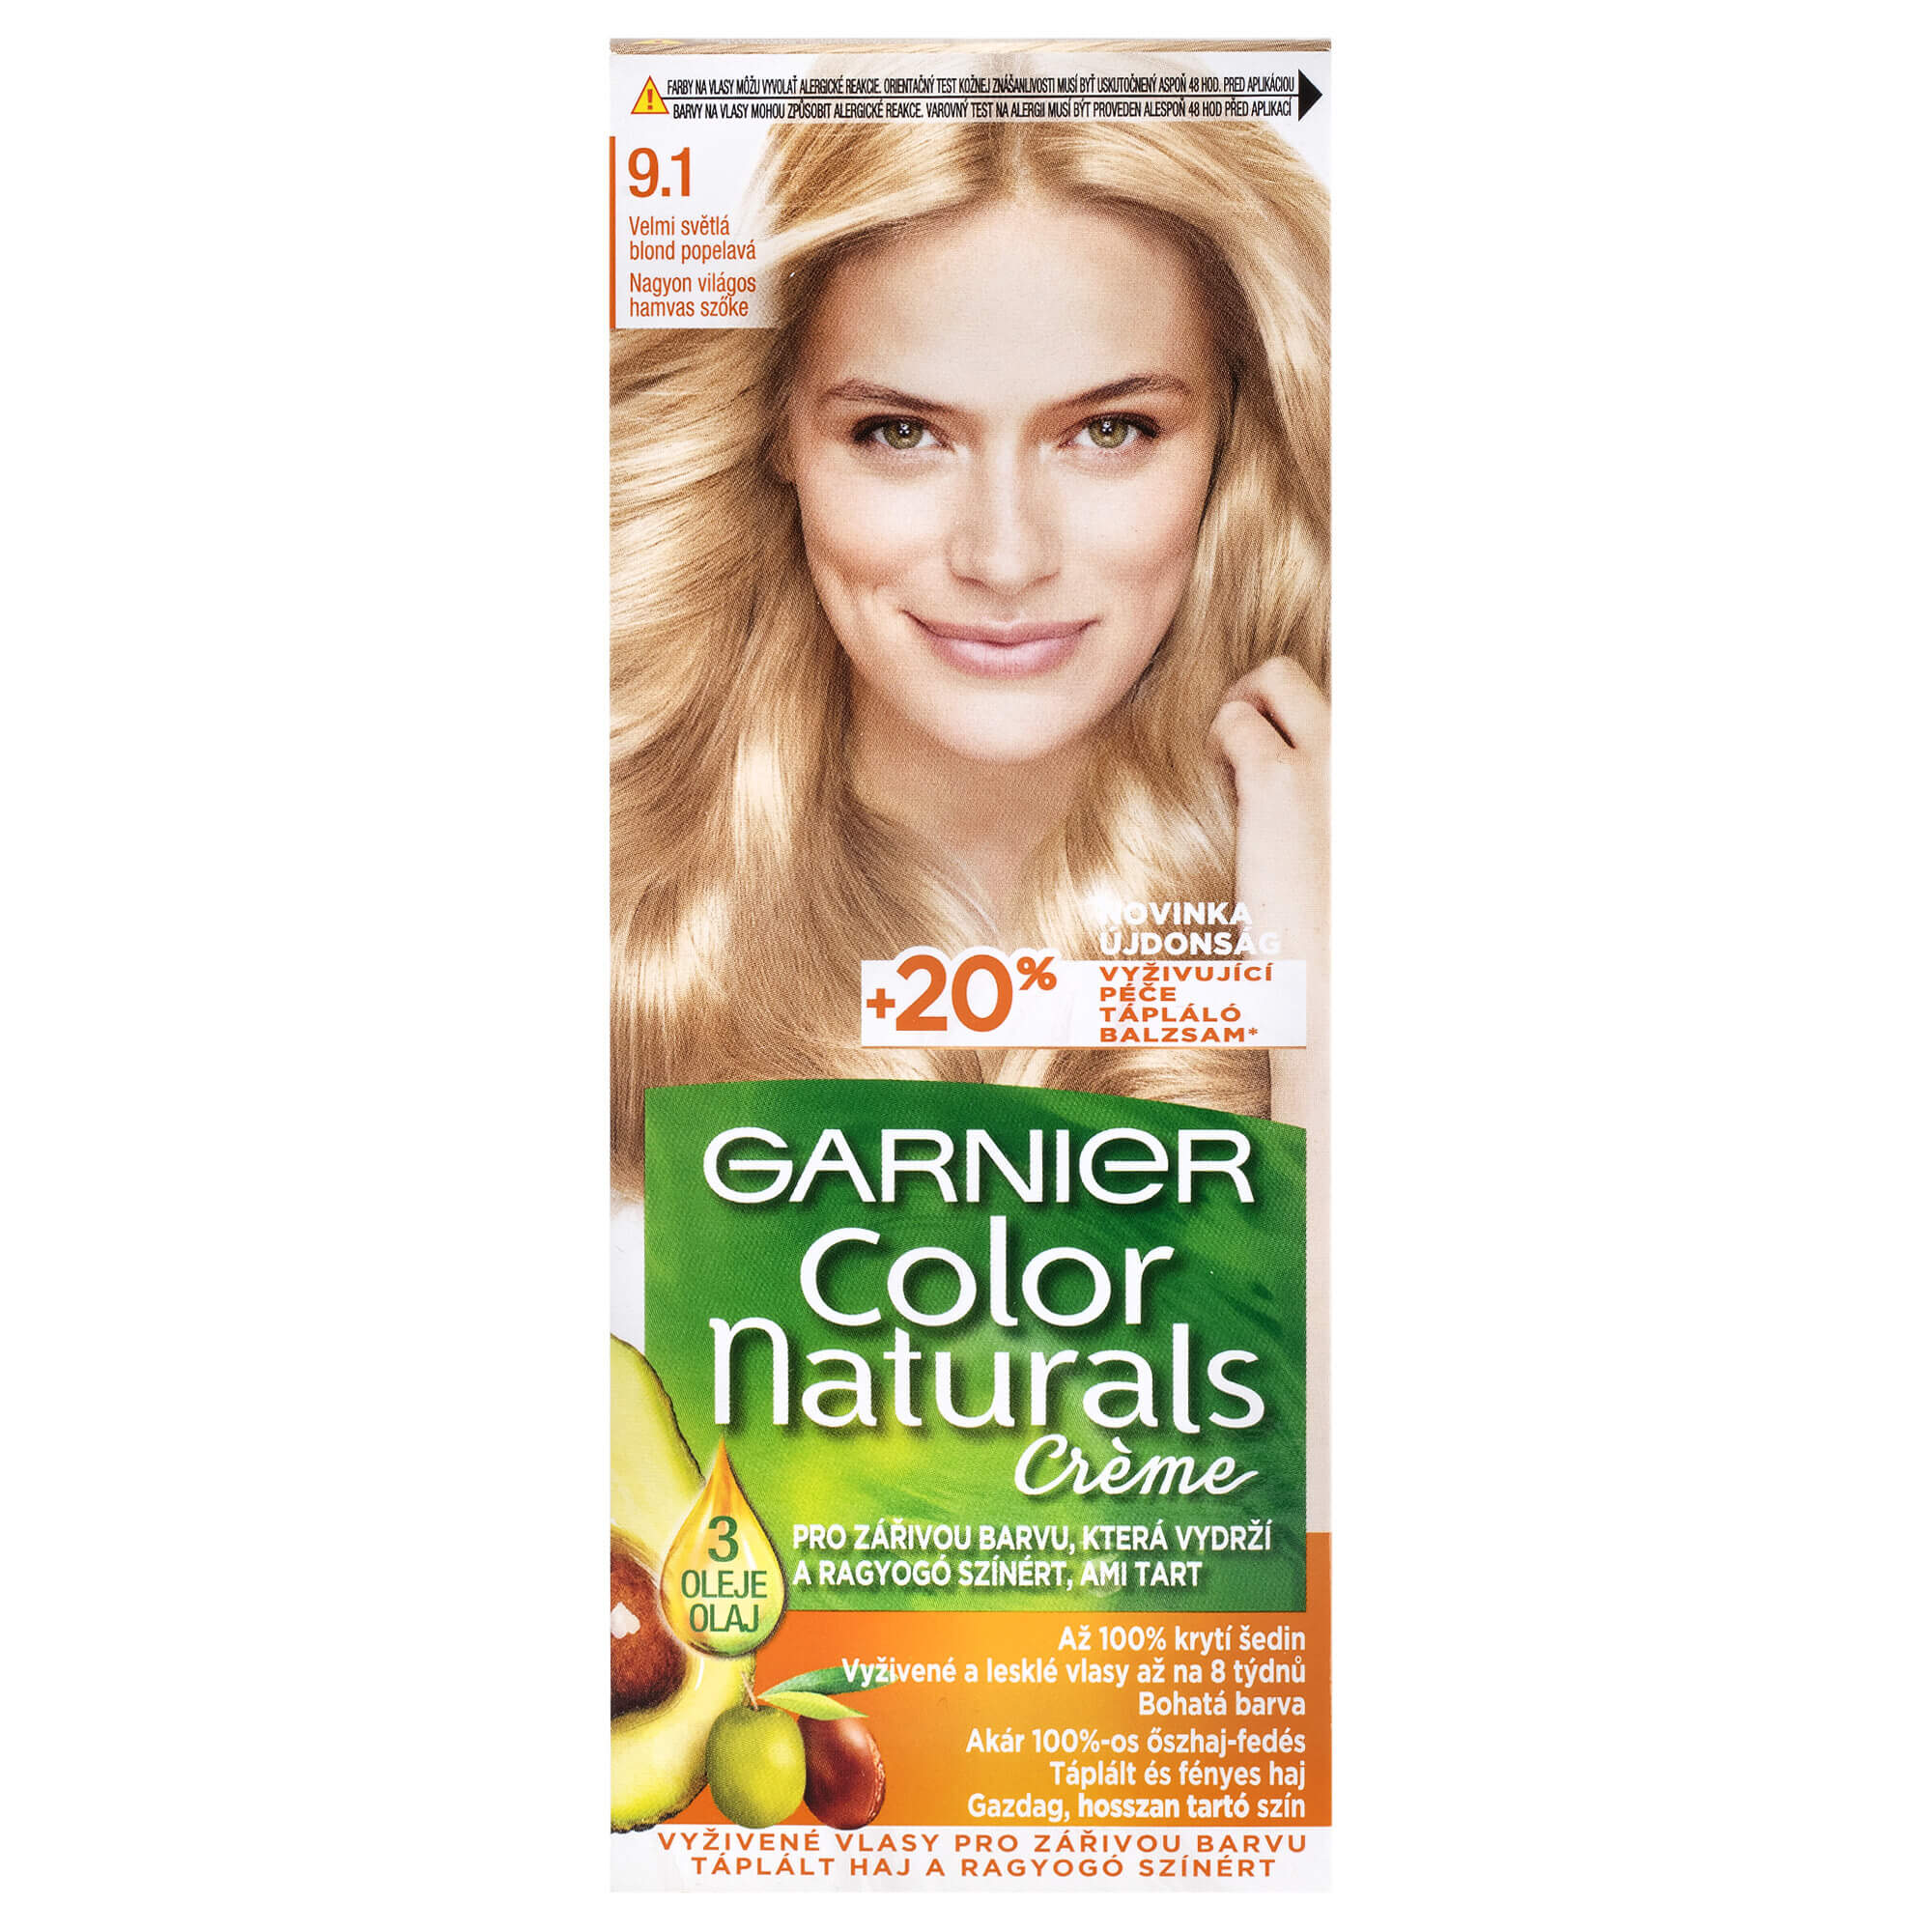 Garnier Dlouhotrvající vyživující barva na vlasy (Color Naturals Creme) 6N přirozená tmavá blond